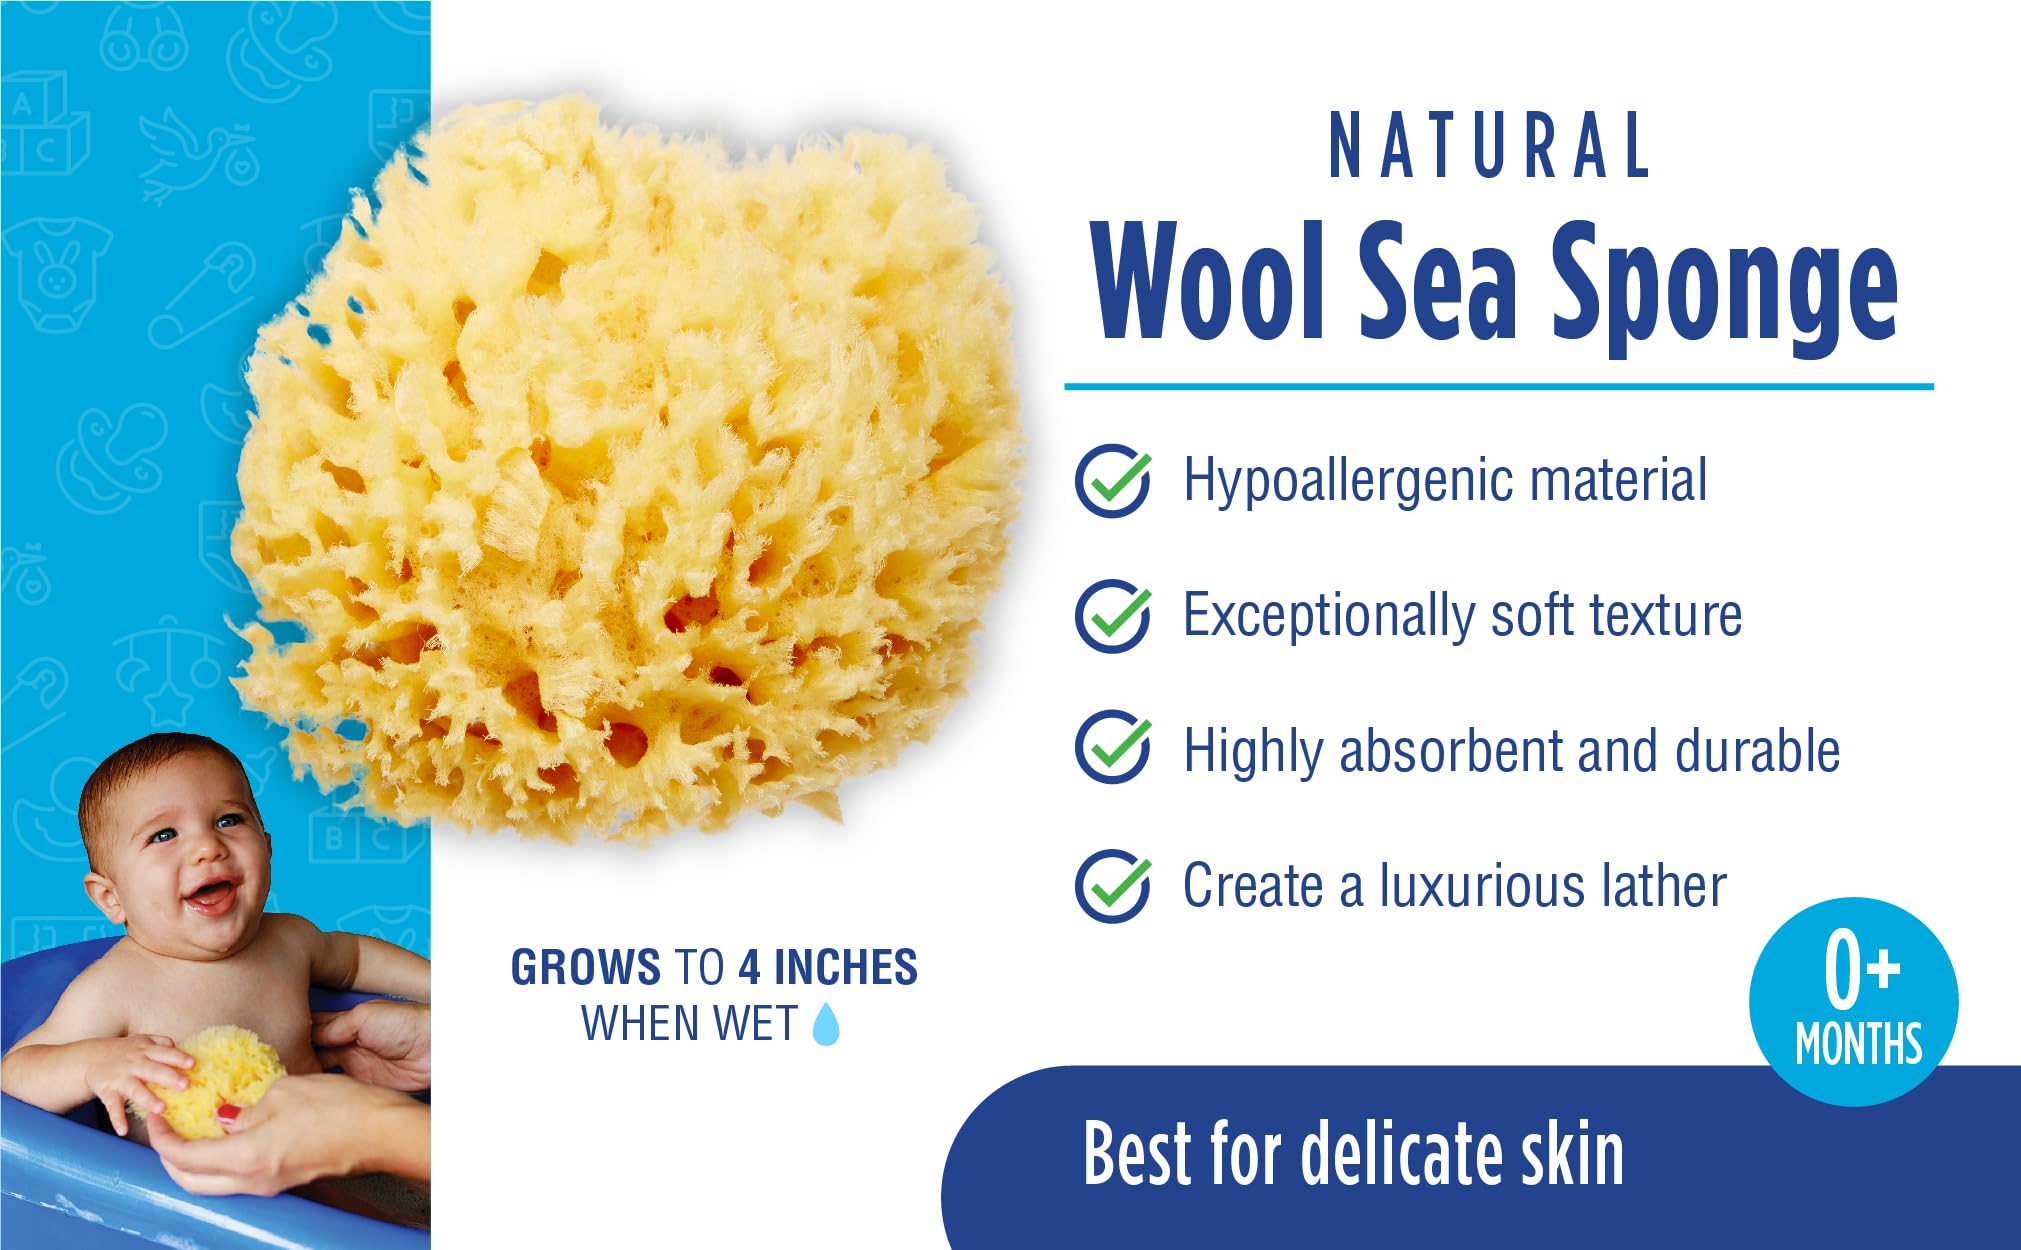 Baby Buddy Natural Wool Sea Sponge, Baby Bath Sponge, Soft on Tender Skin, Hypoallergenic, Brown, 4.5in, 1 Count